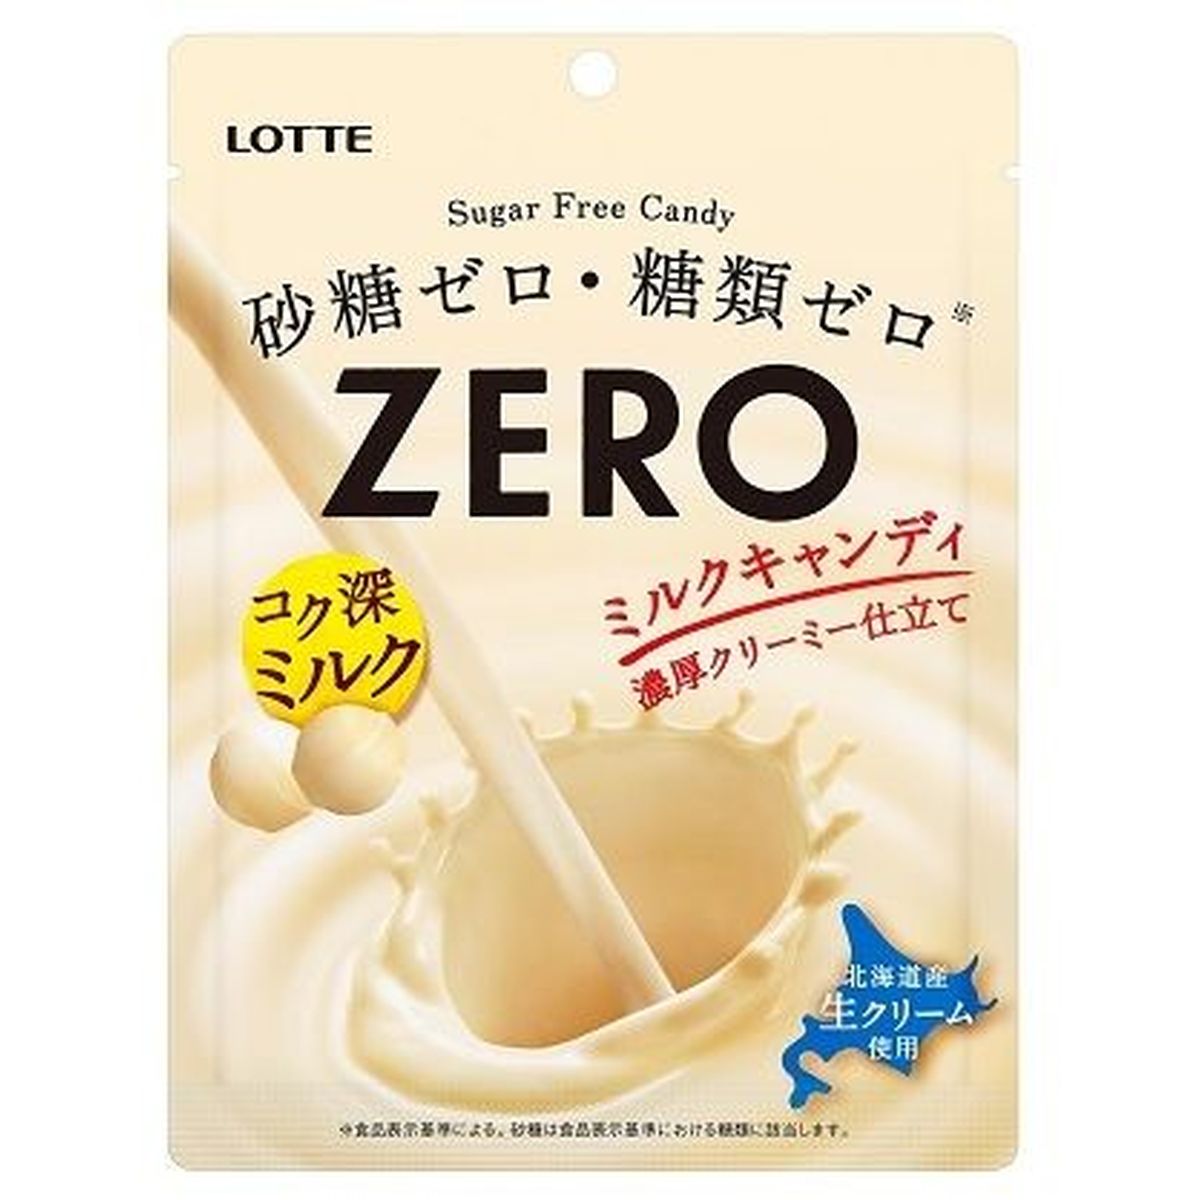 【10個入リ】ロッテ ゼロミルクキャンディ 袋 50g